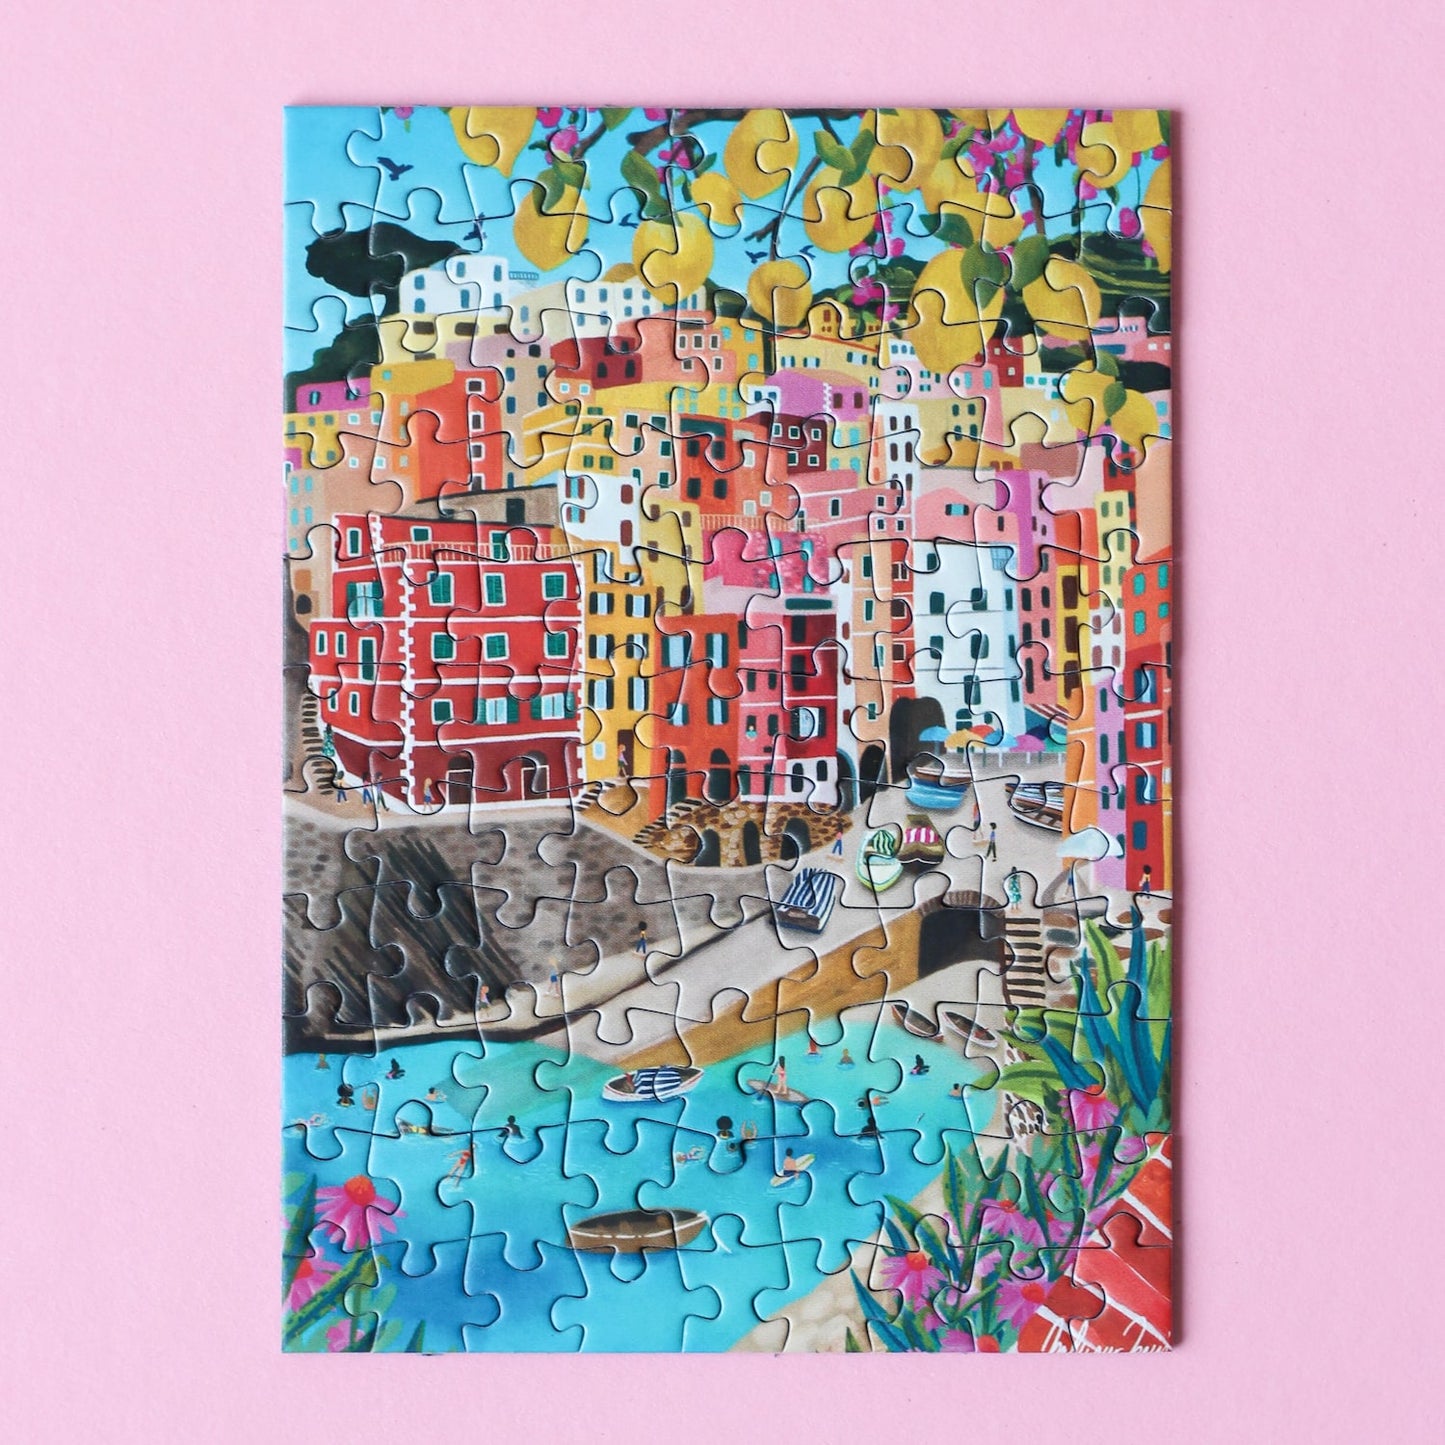 Außergewöhnliches Minipuzzle für Erwachsene mit 99 Teilen, das Riomaggiore in Cinque Terre, Italien zeigt.